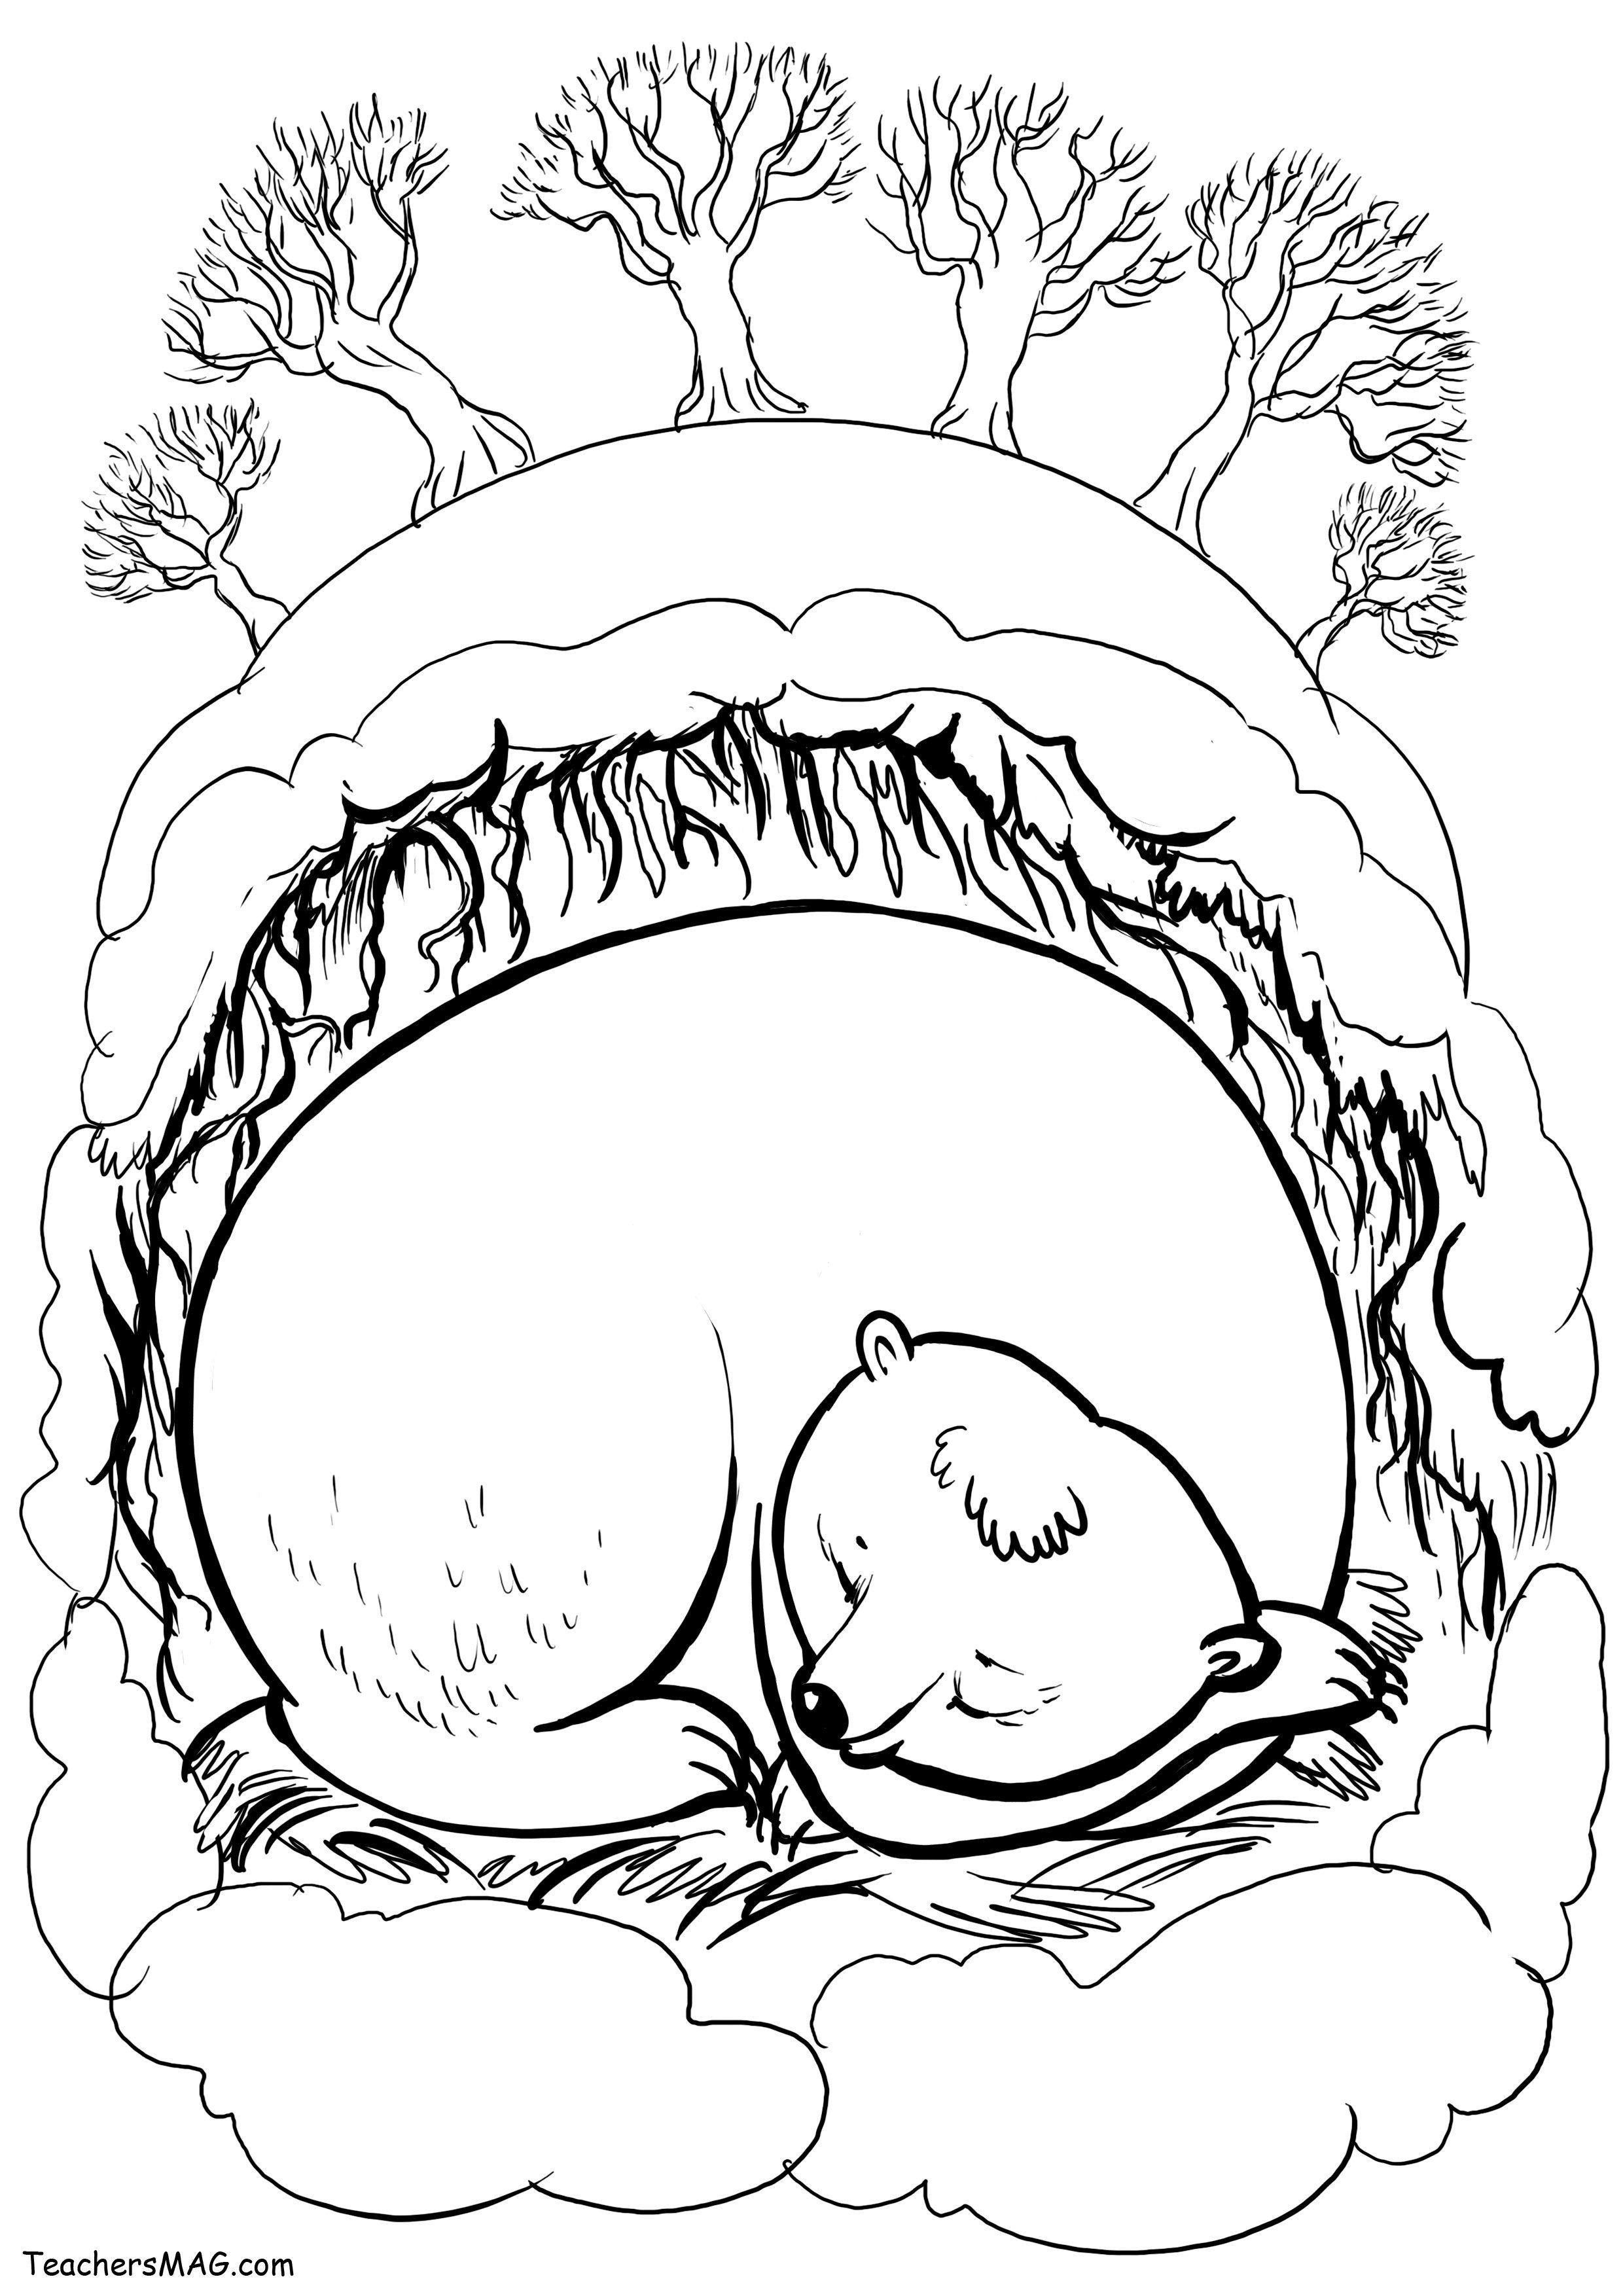 Мишка спит в берлоге #23